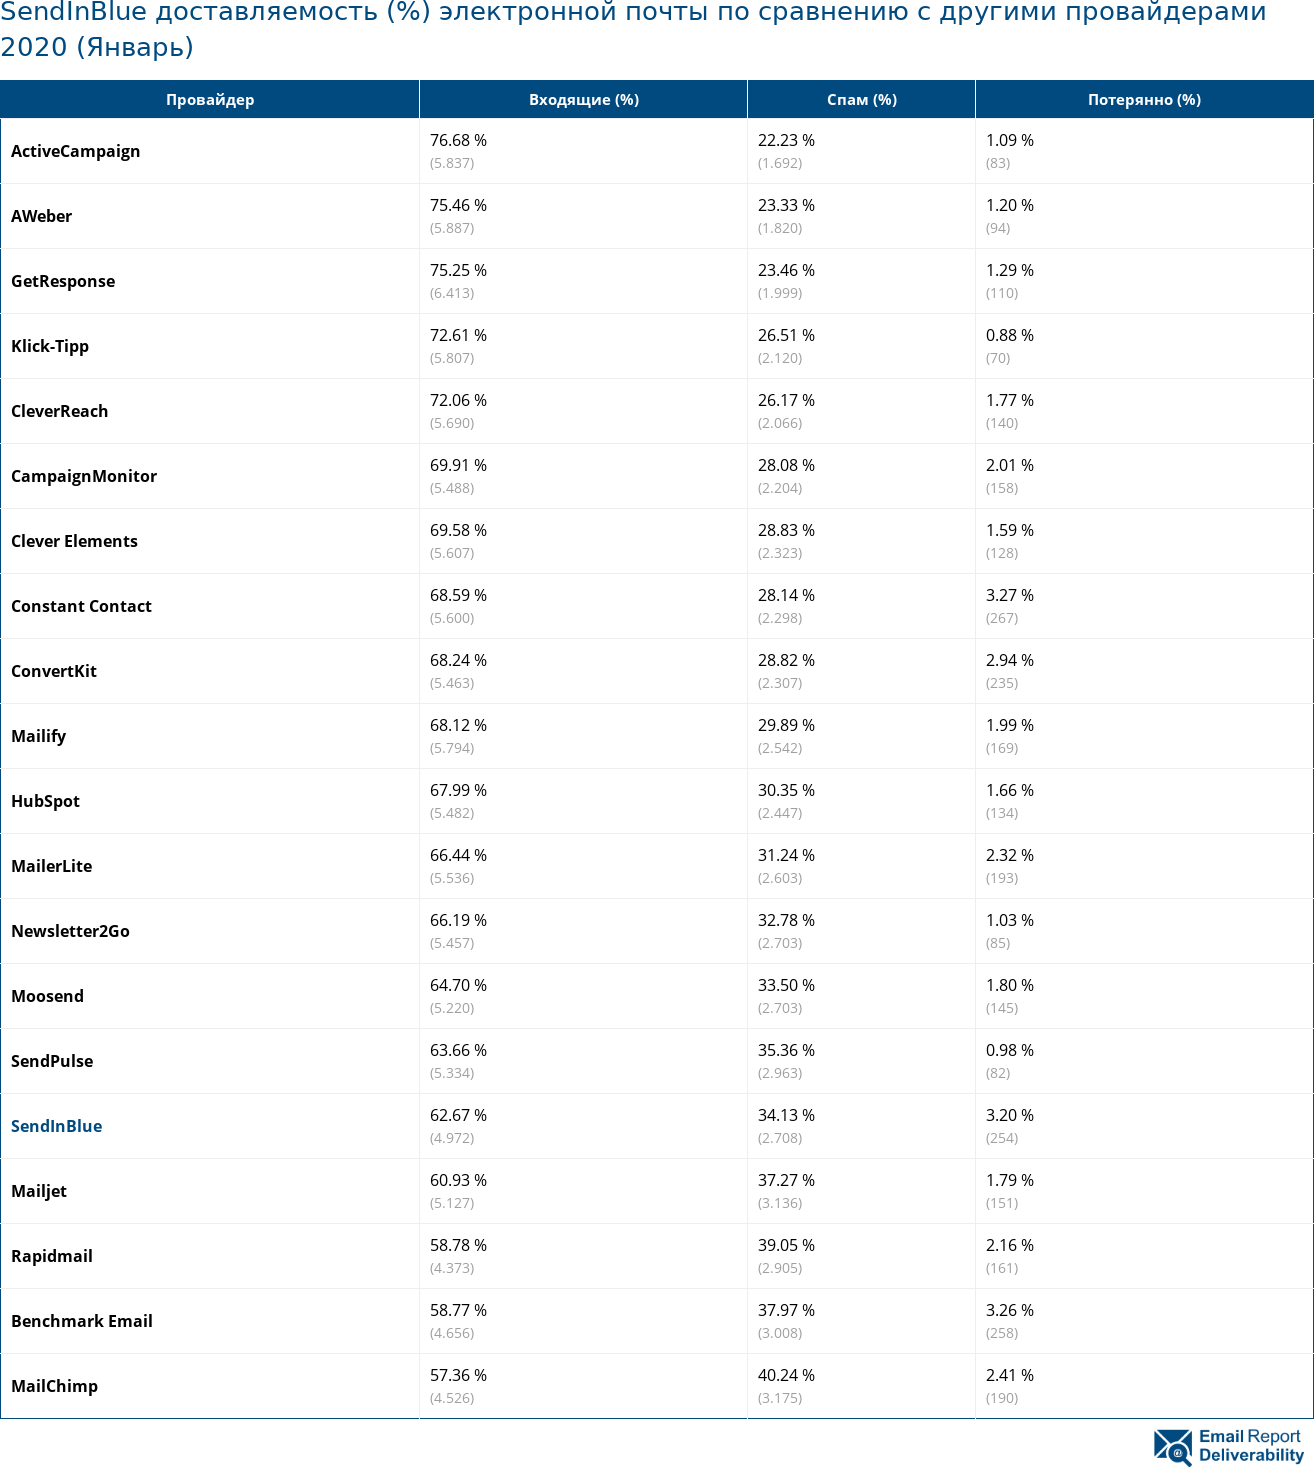 SendInBlue доставляемость (%) электронной почты по сравнению с другими провайдерами 2020 (Январь)